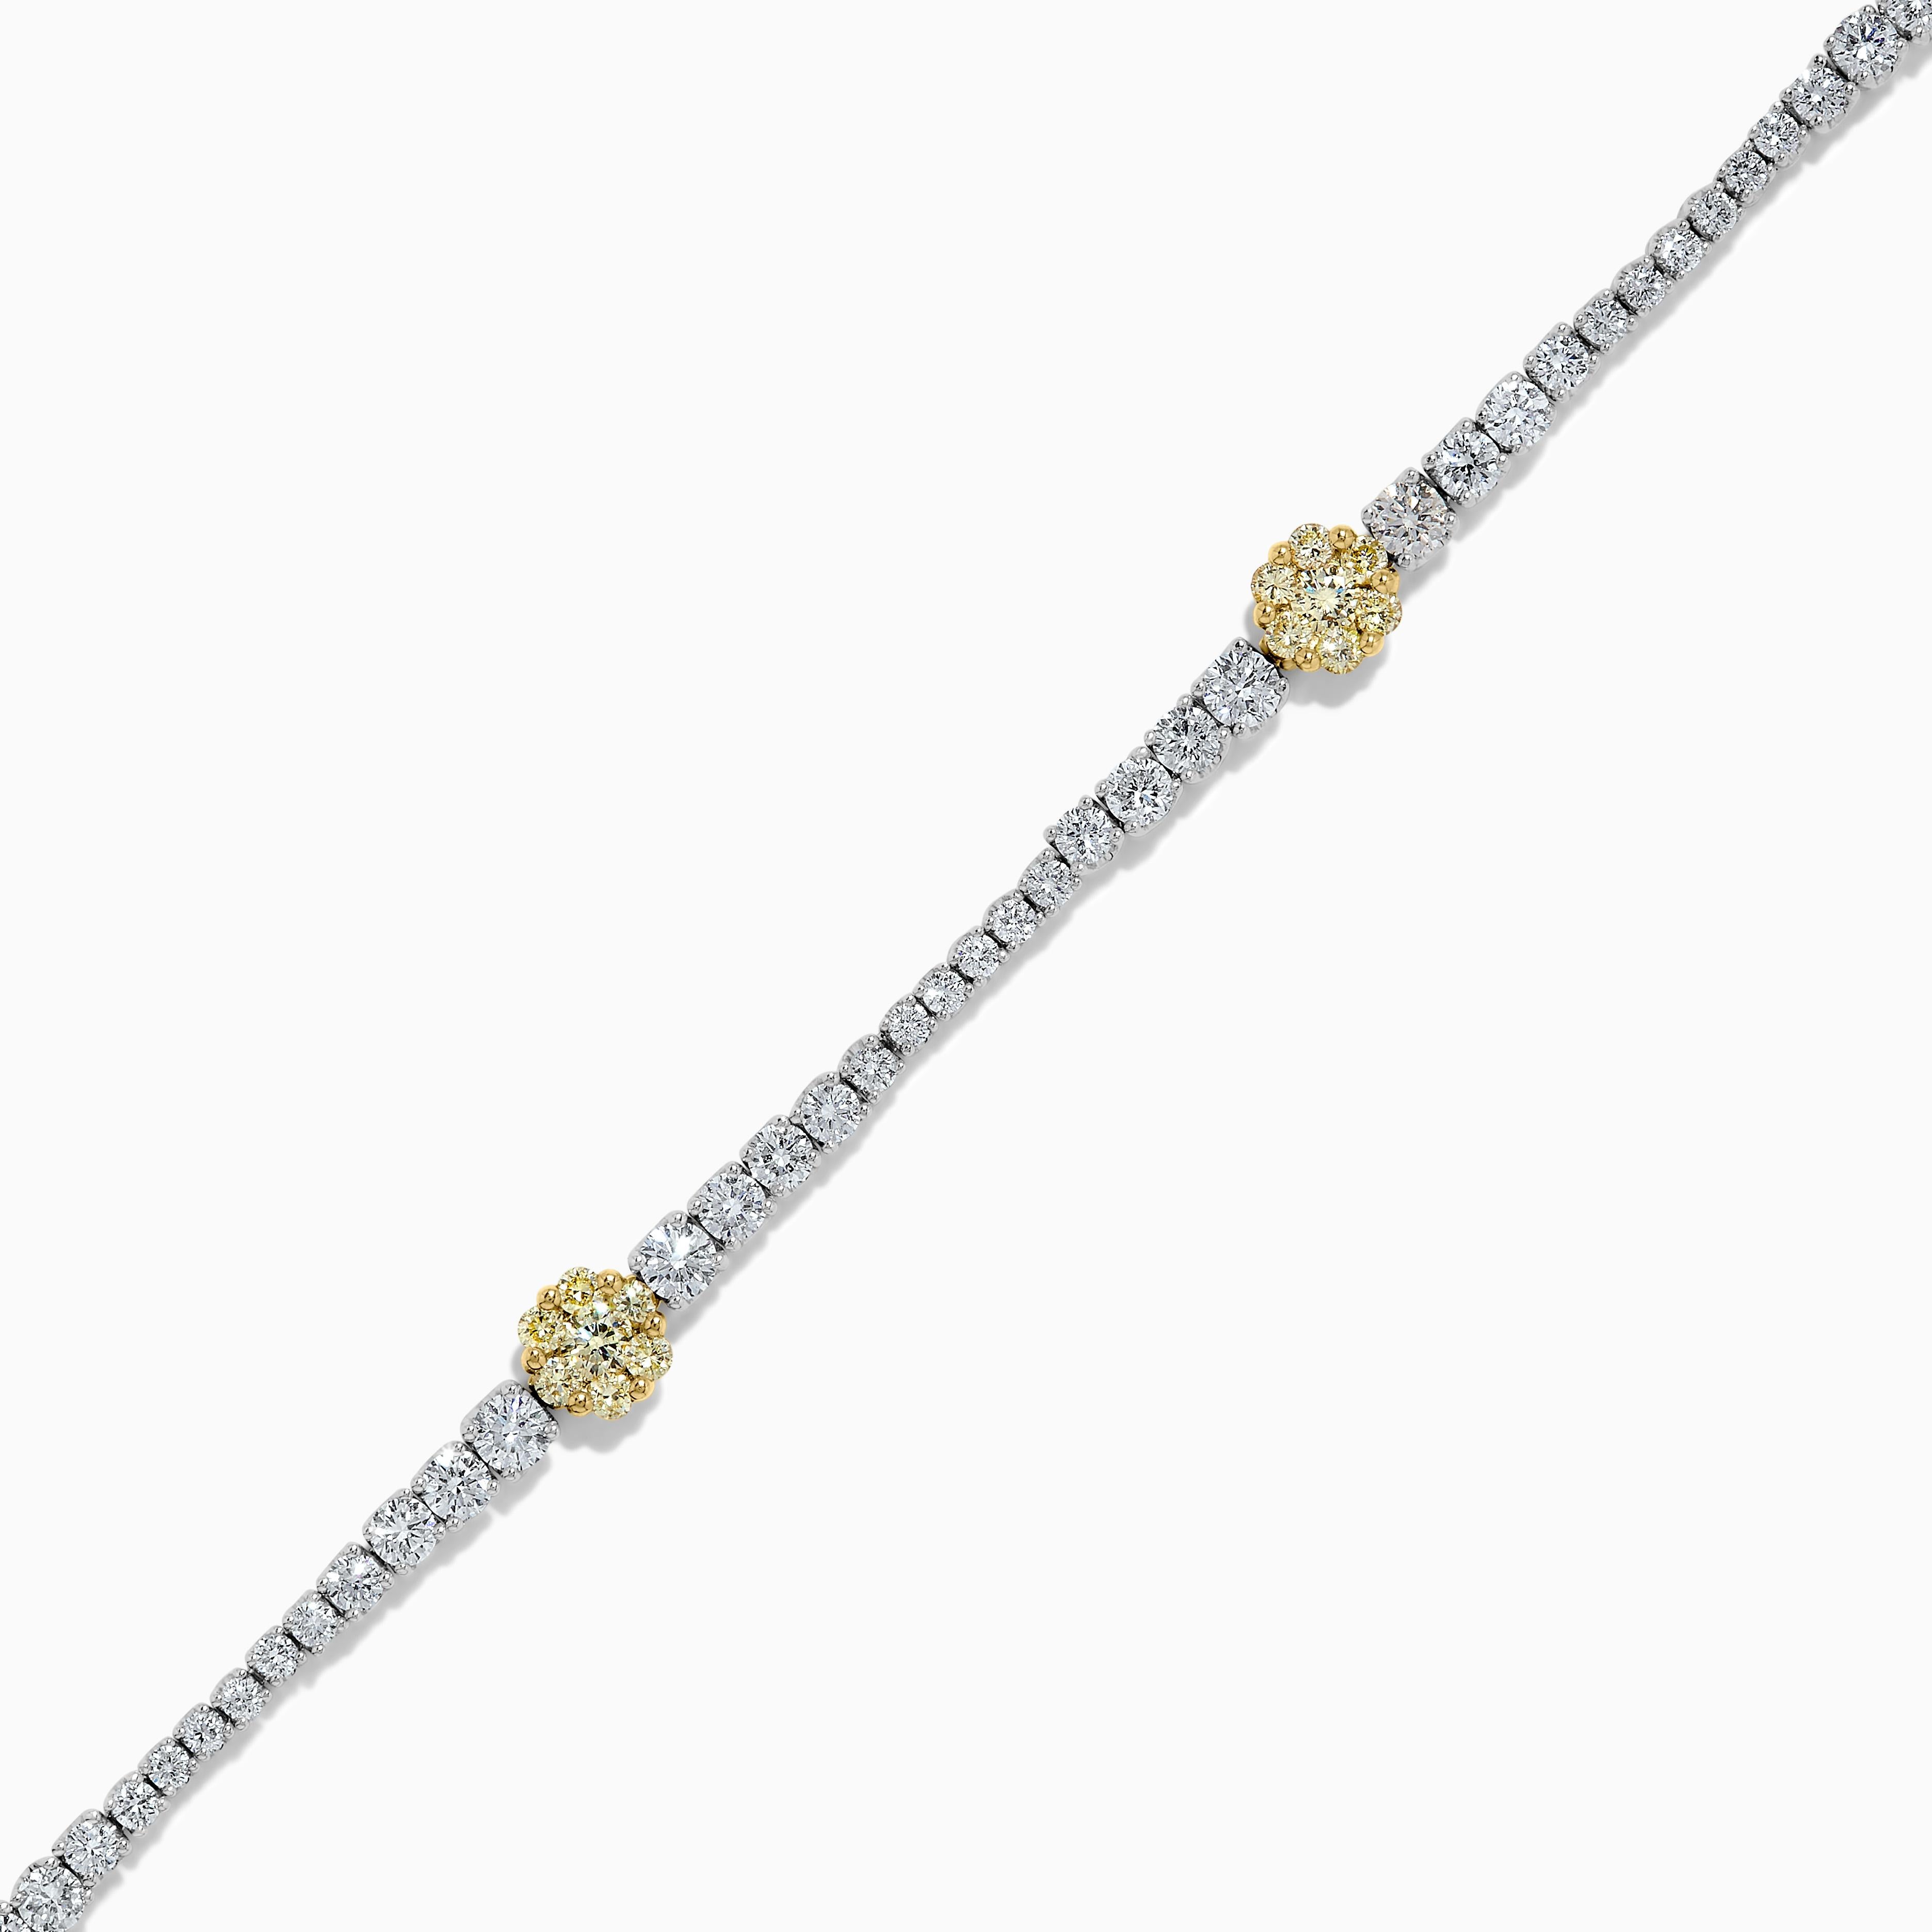 Bracelet classique en diamant jaune naturel de taille ronde de Raregemworld. Monté dans une belle monture en or jaune et blanc 18 carats avec des grappes de diamants jaunes ronds naturels. Les diamants jaunes sont entourés de petits diamants blancs